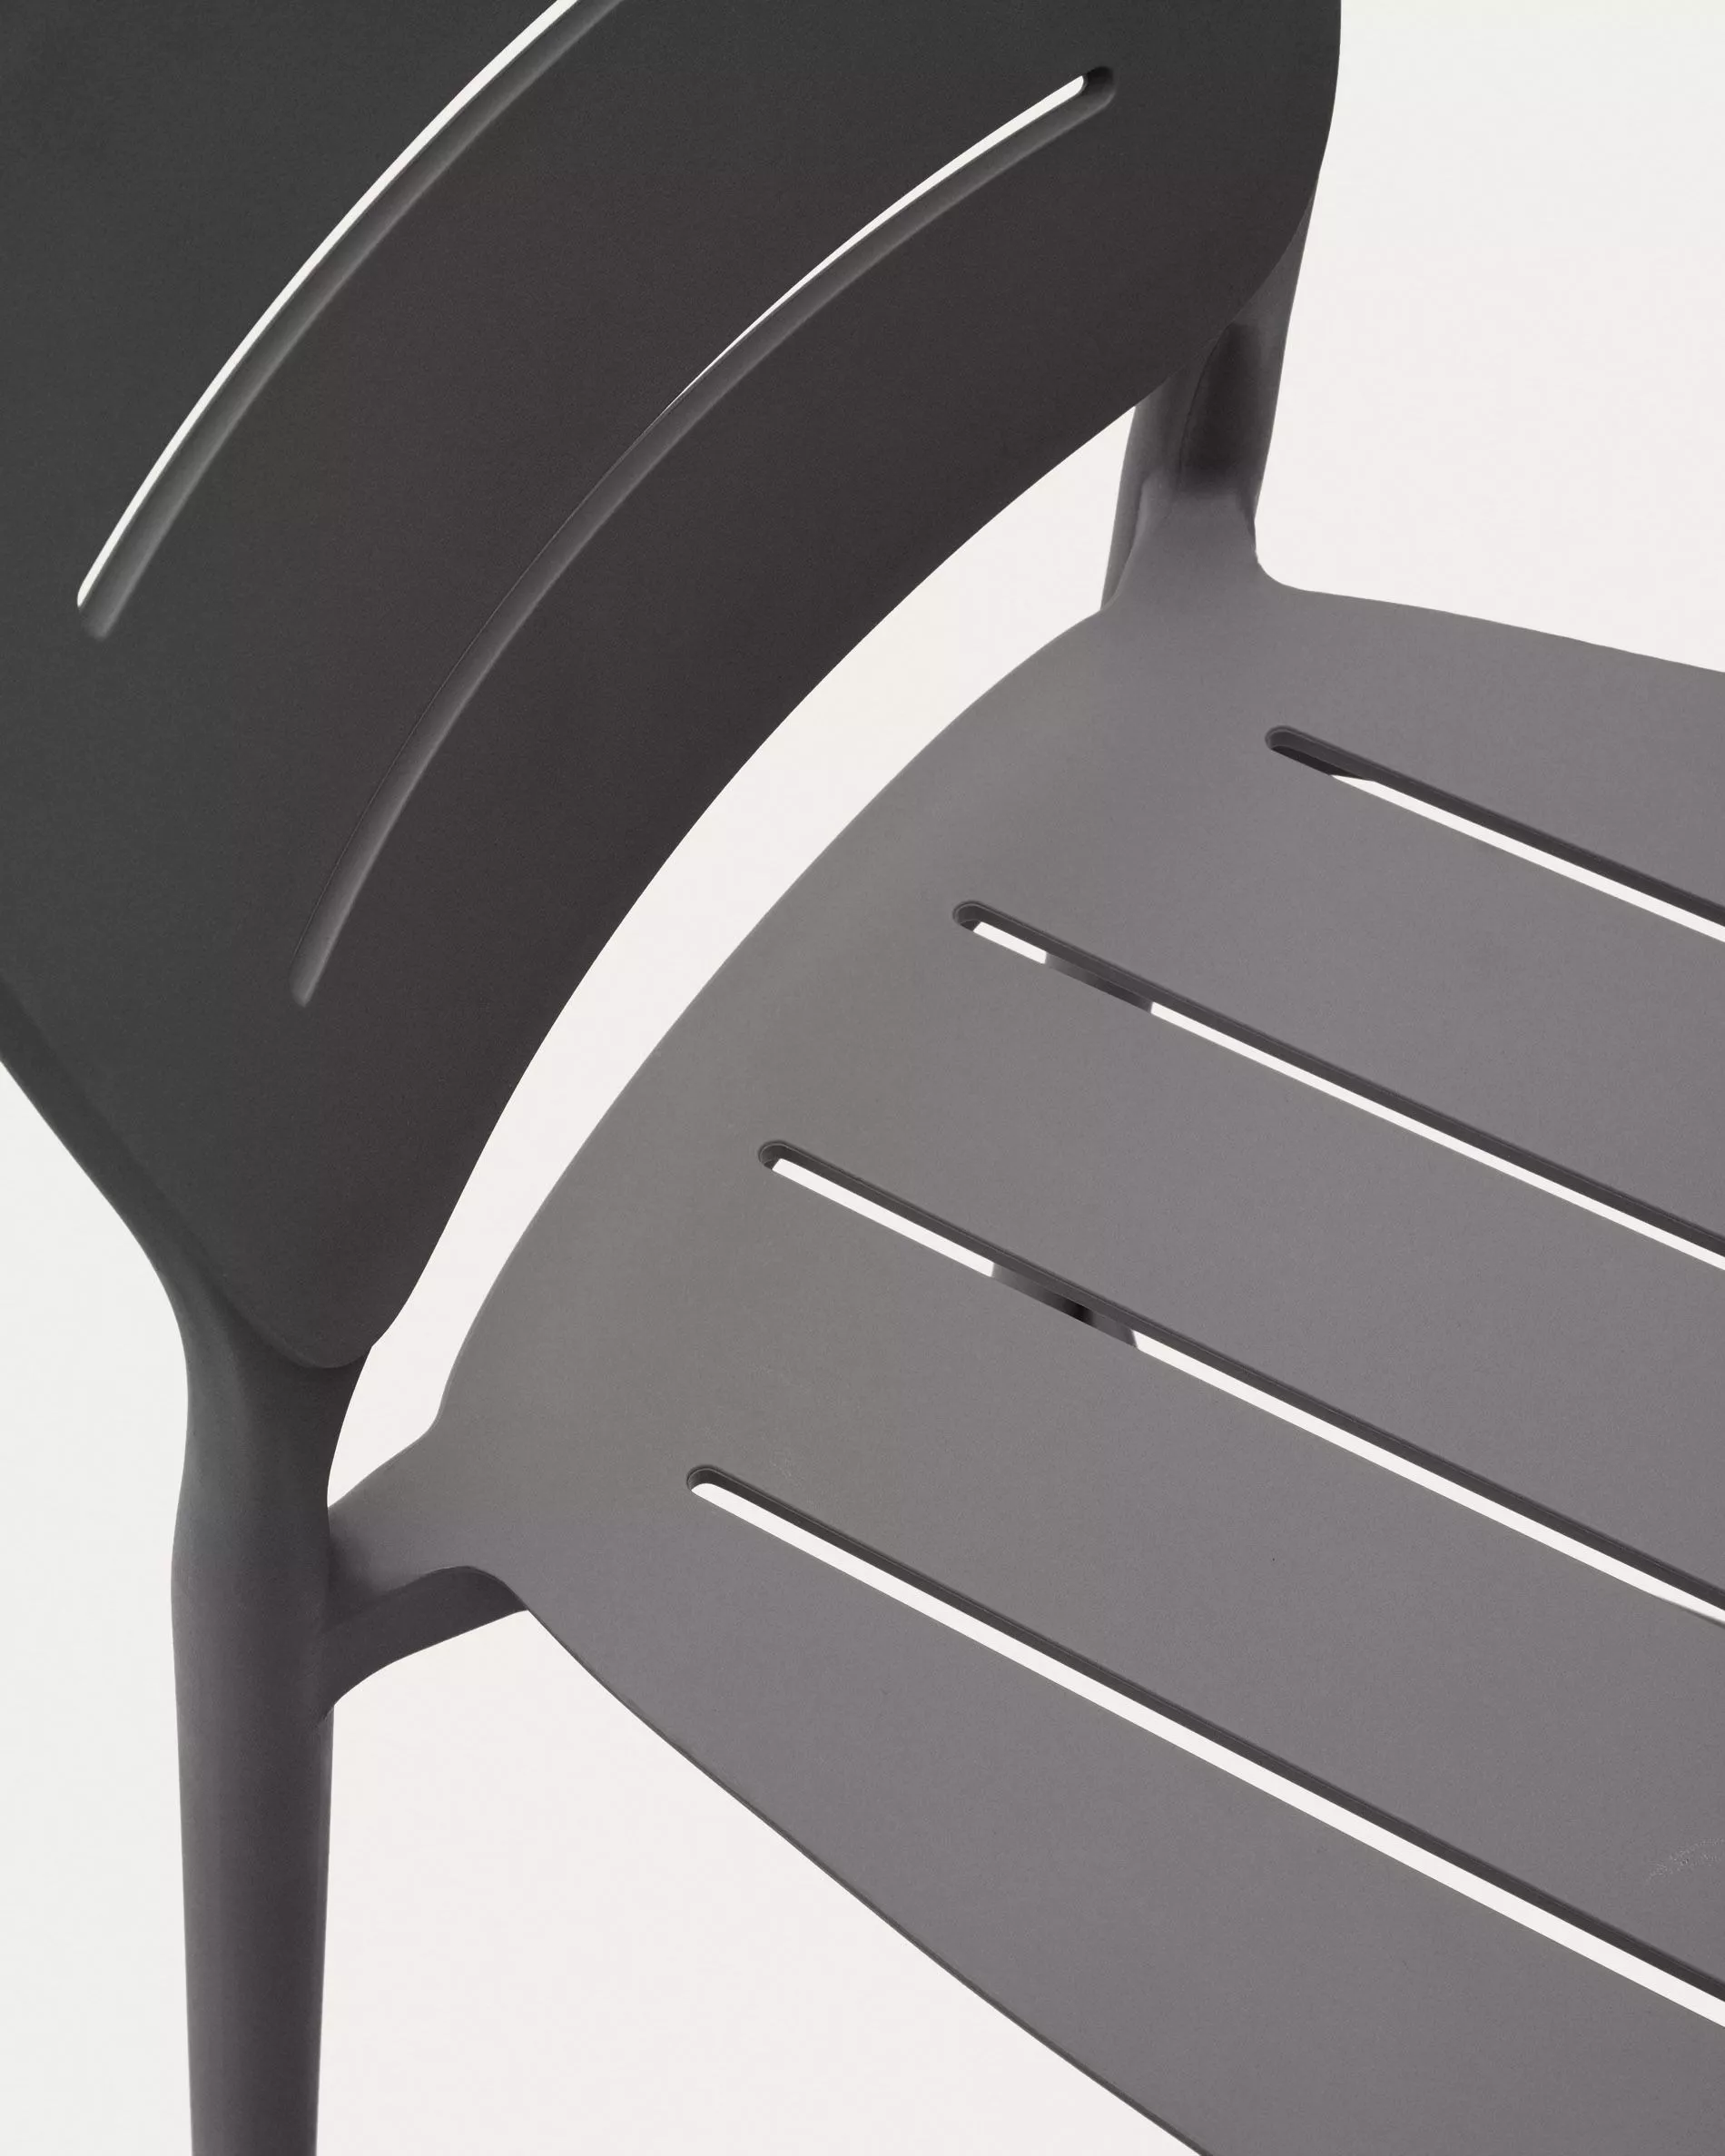 Полубарный стул La Forma Morella серый пластик